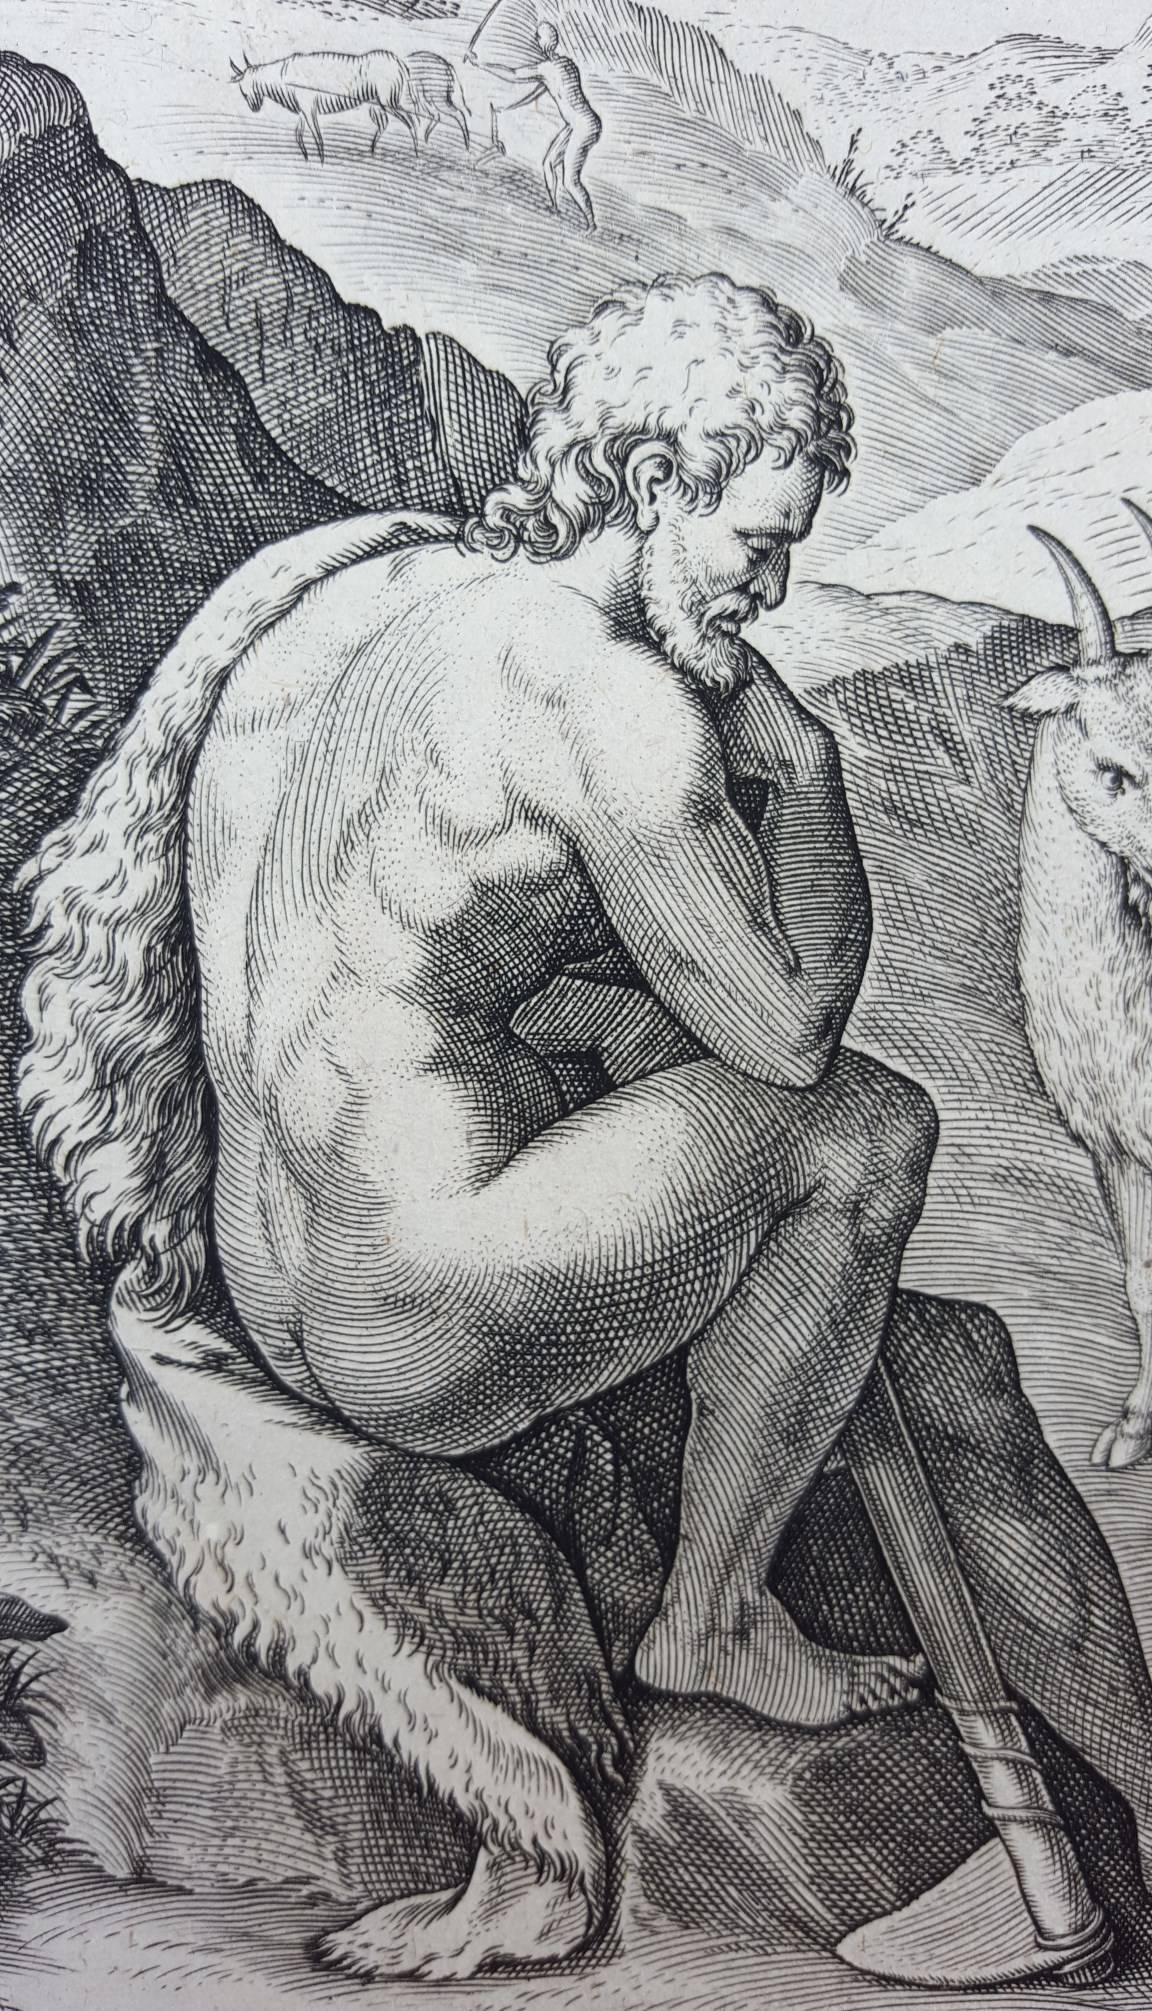 Lapsus homo tolerant miseram cum coniuge vitam - Old Masters Print by Johannes Sadeler I